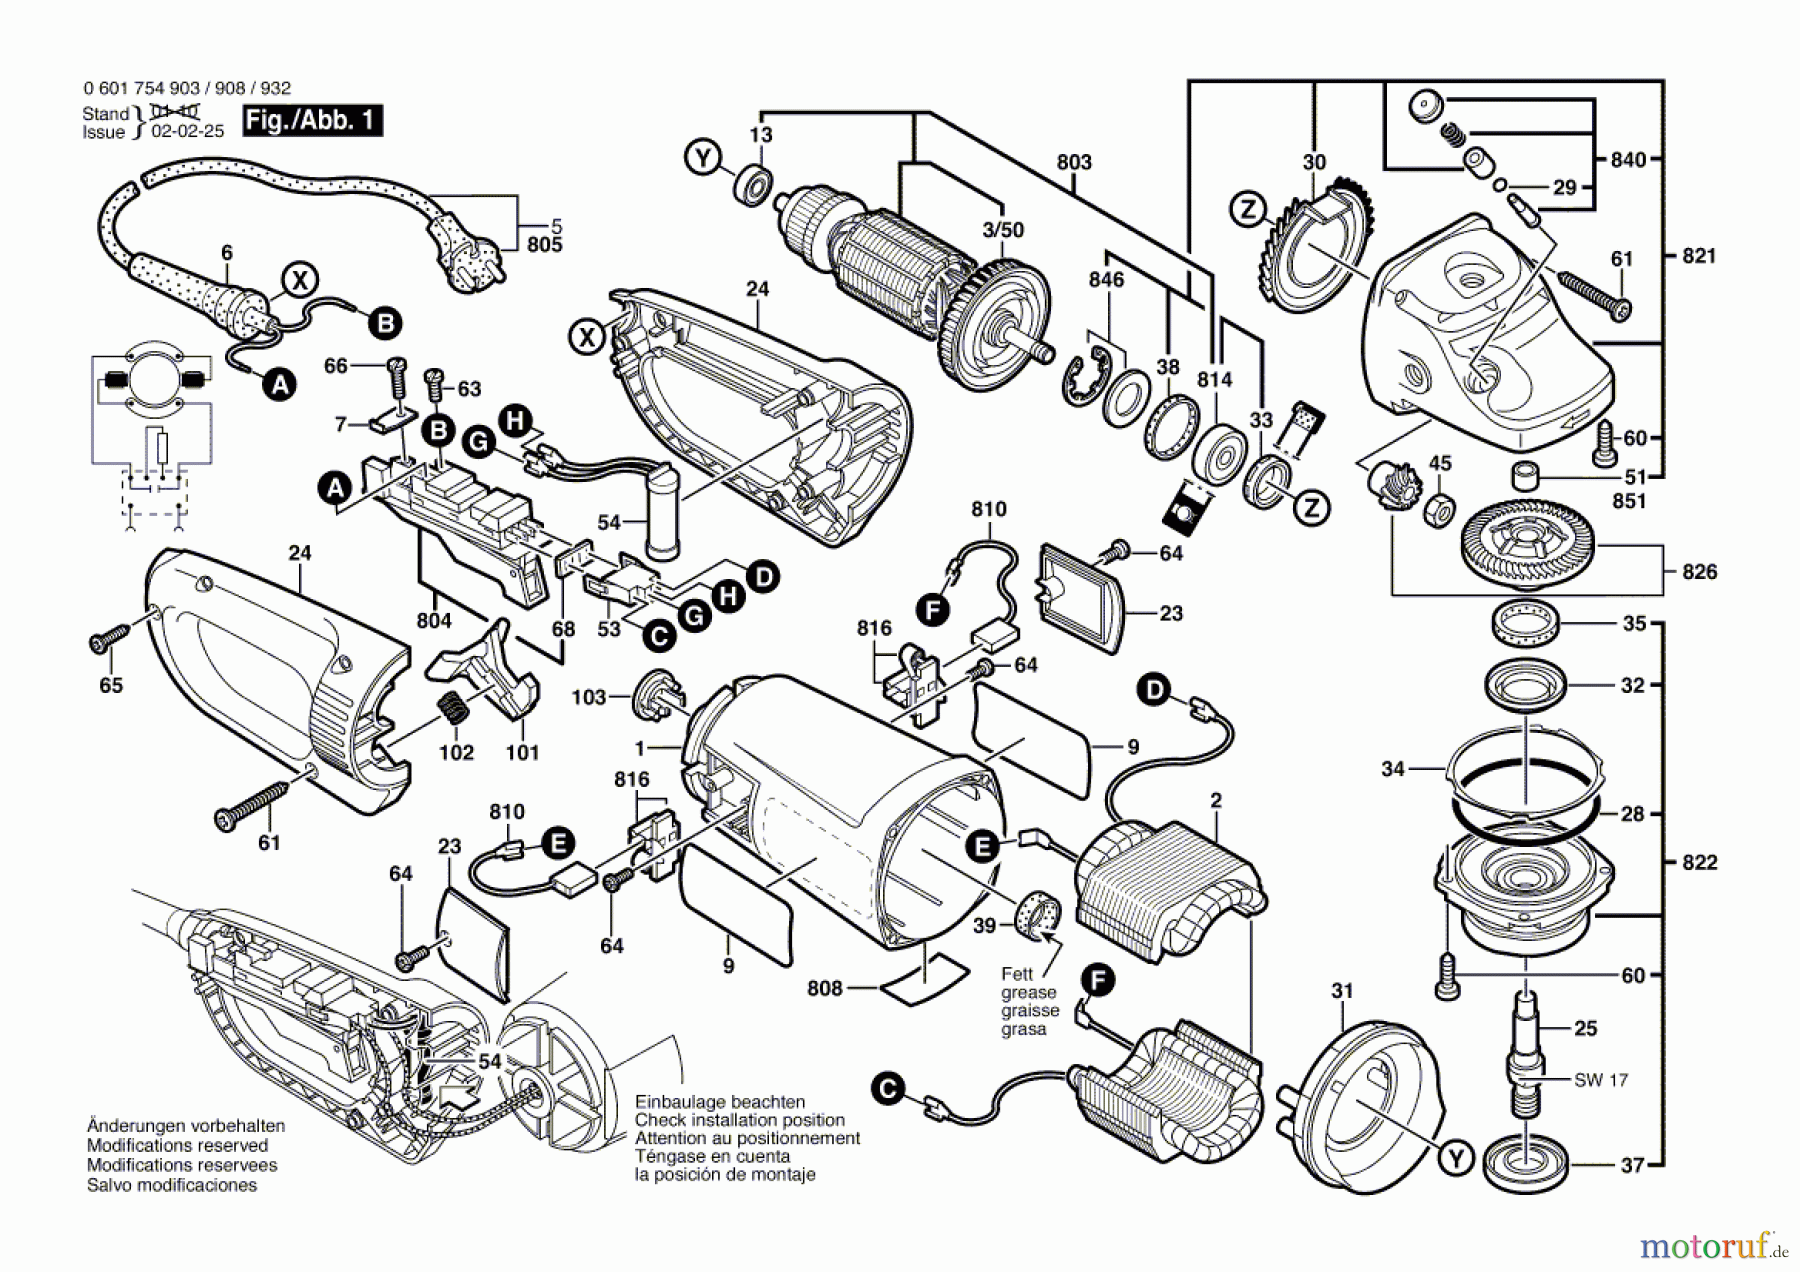  Bosch Werkzeug Winkelschleifer GWS 23-230 J Seite 1